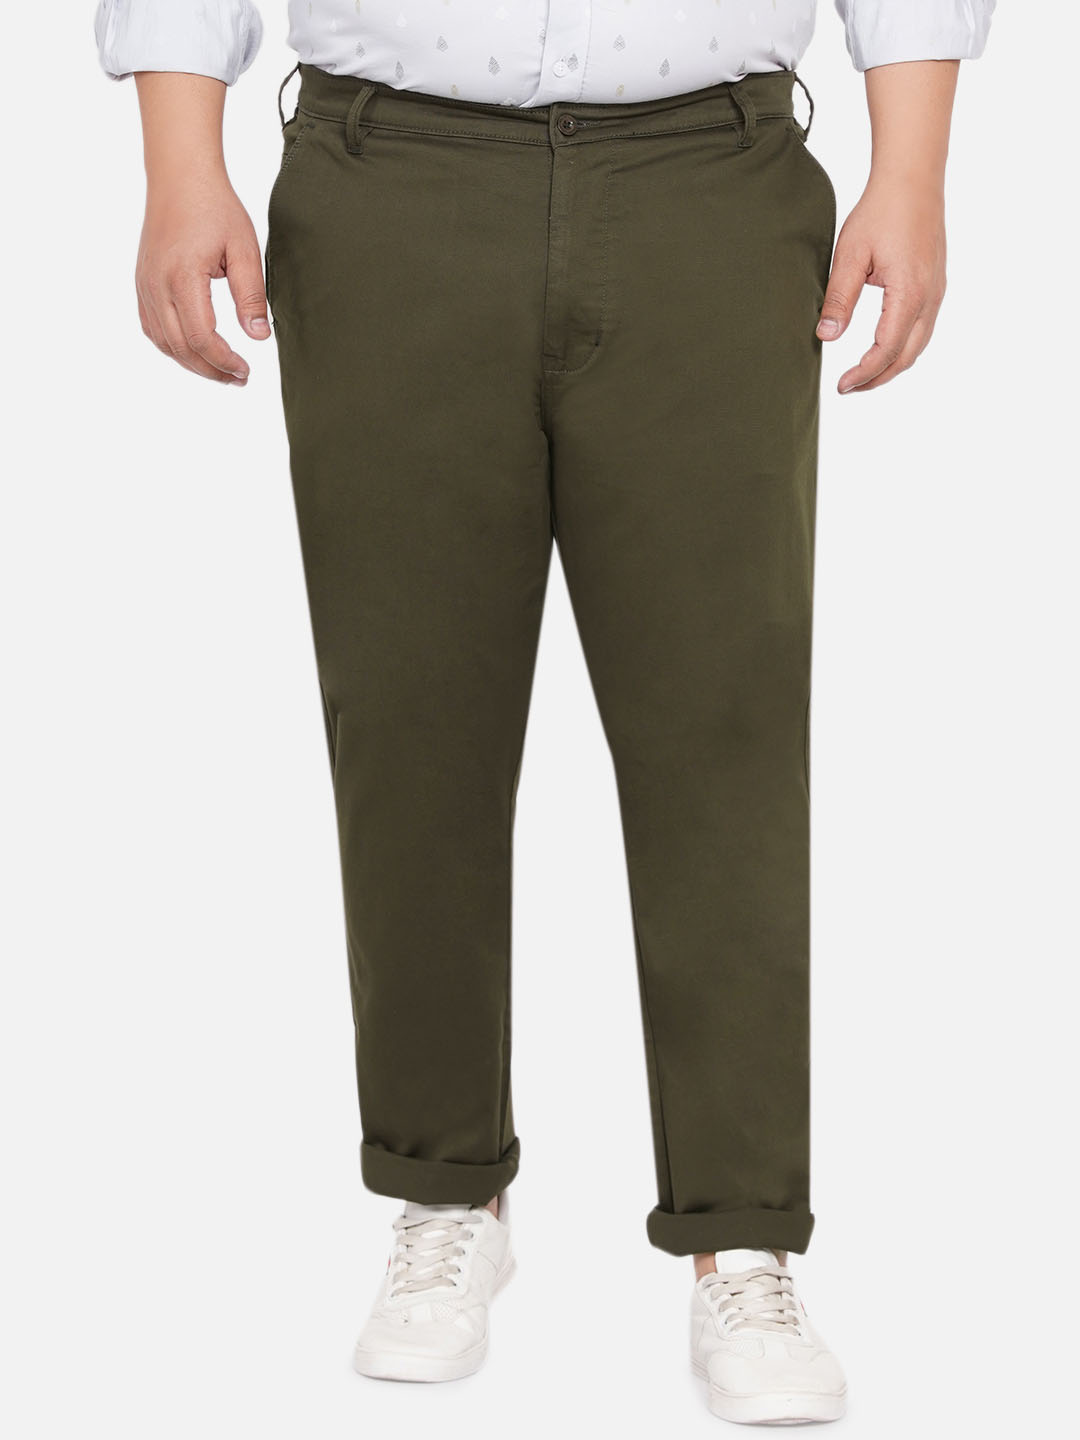 bottomwear/trousers/JPTR2190/jptr2190-1.jpg